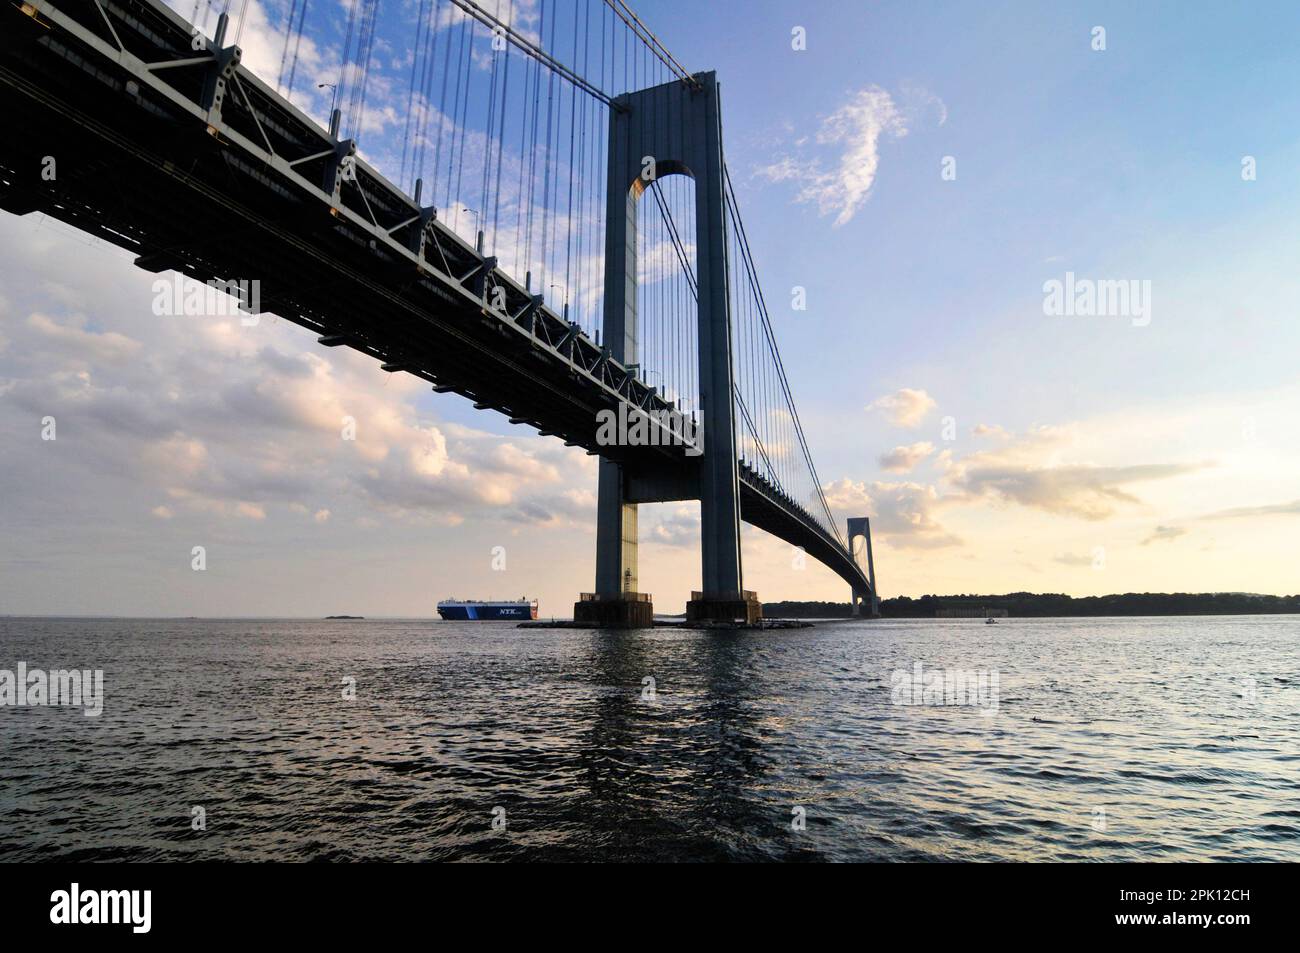 Die Verrazzano Bridge aus der Sicht der Bay Ridge Promenade in Brooklyn, New York City, NY, USA. Stockfoto